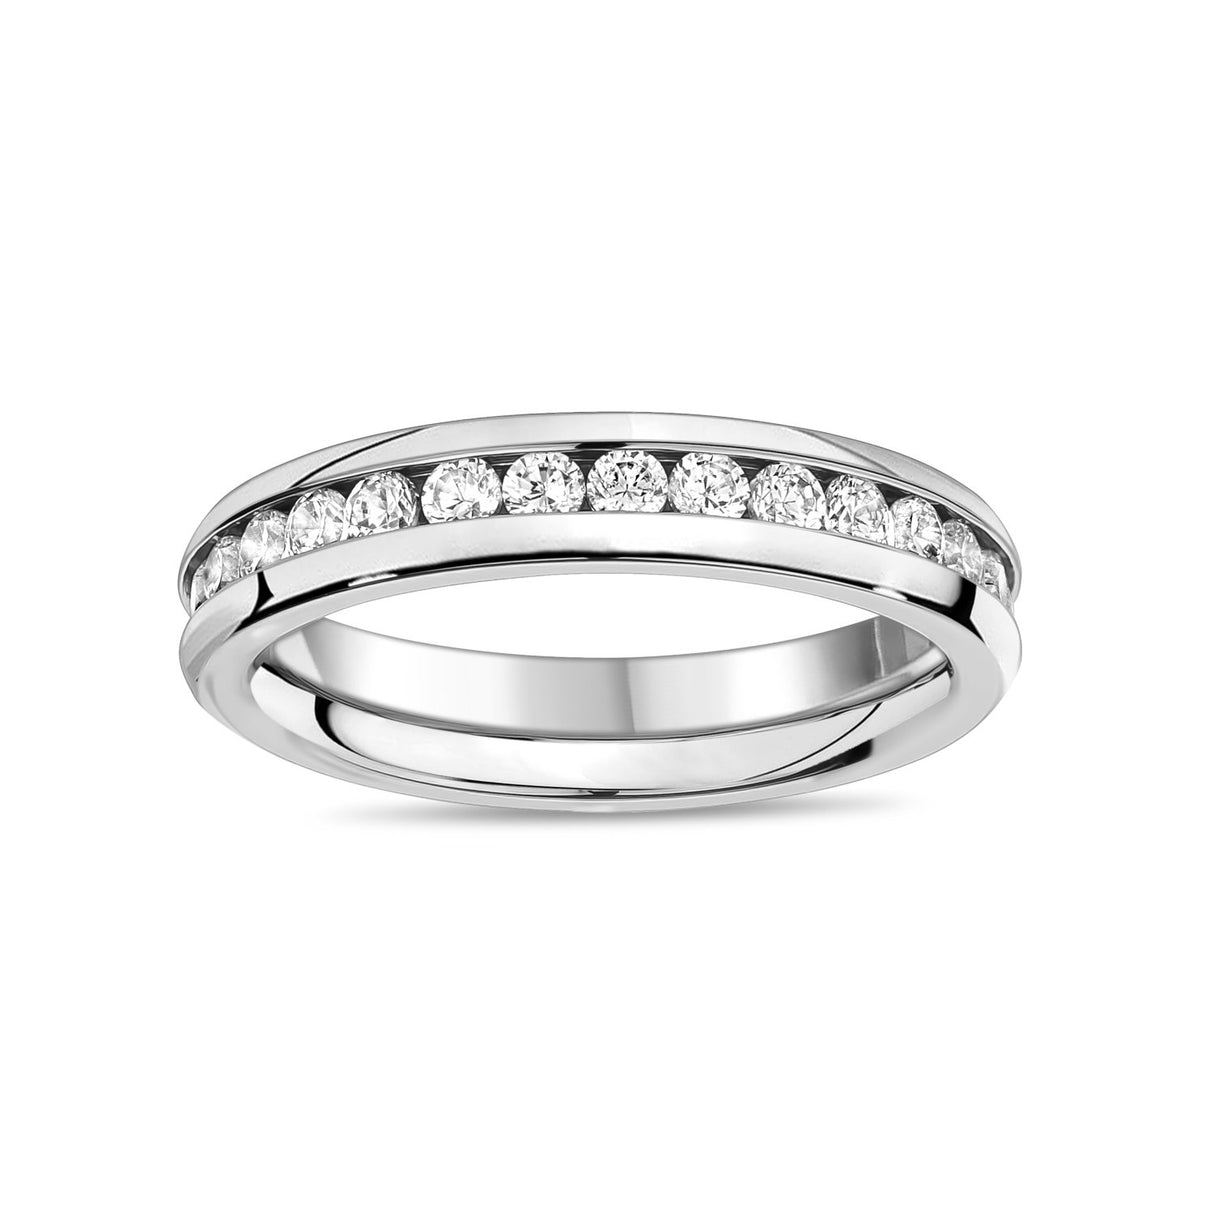 女士戒指 - 不锈钢槽式镶嵌永恒戒指